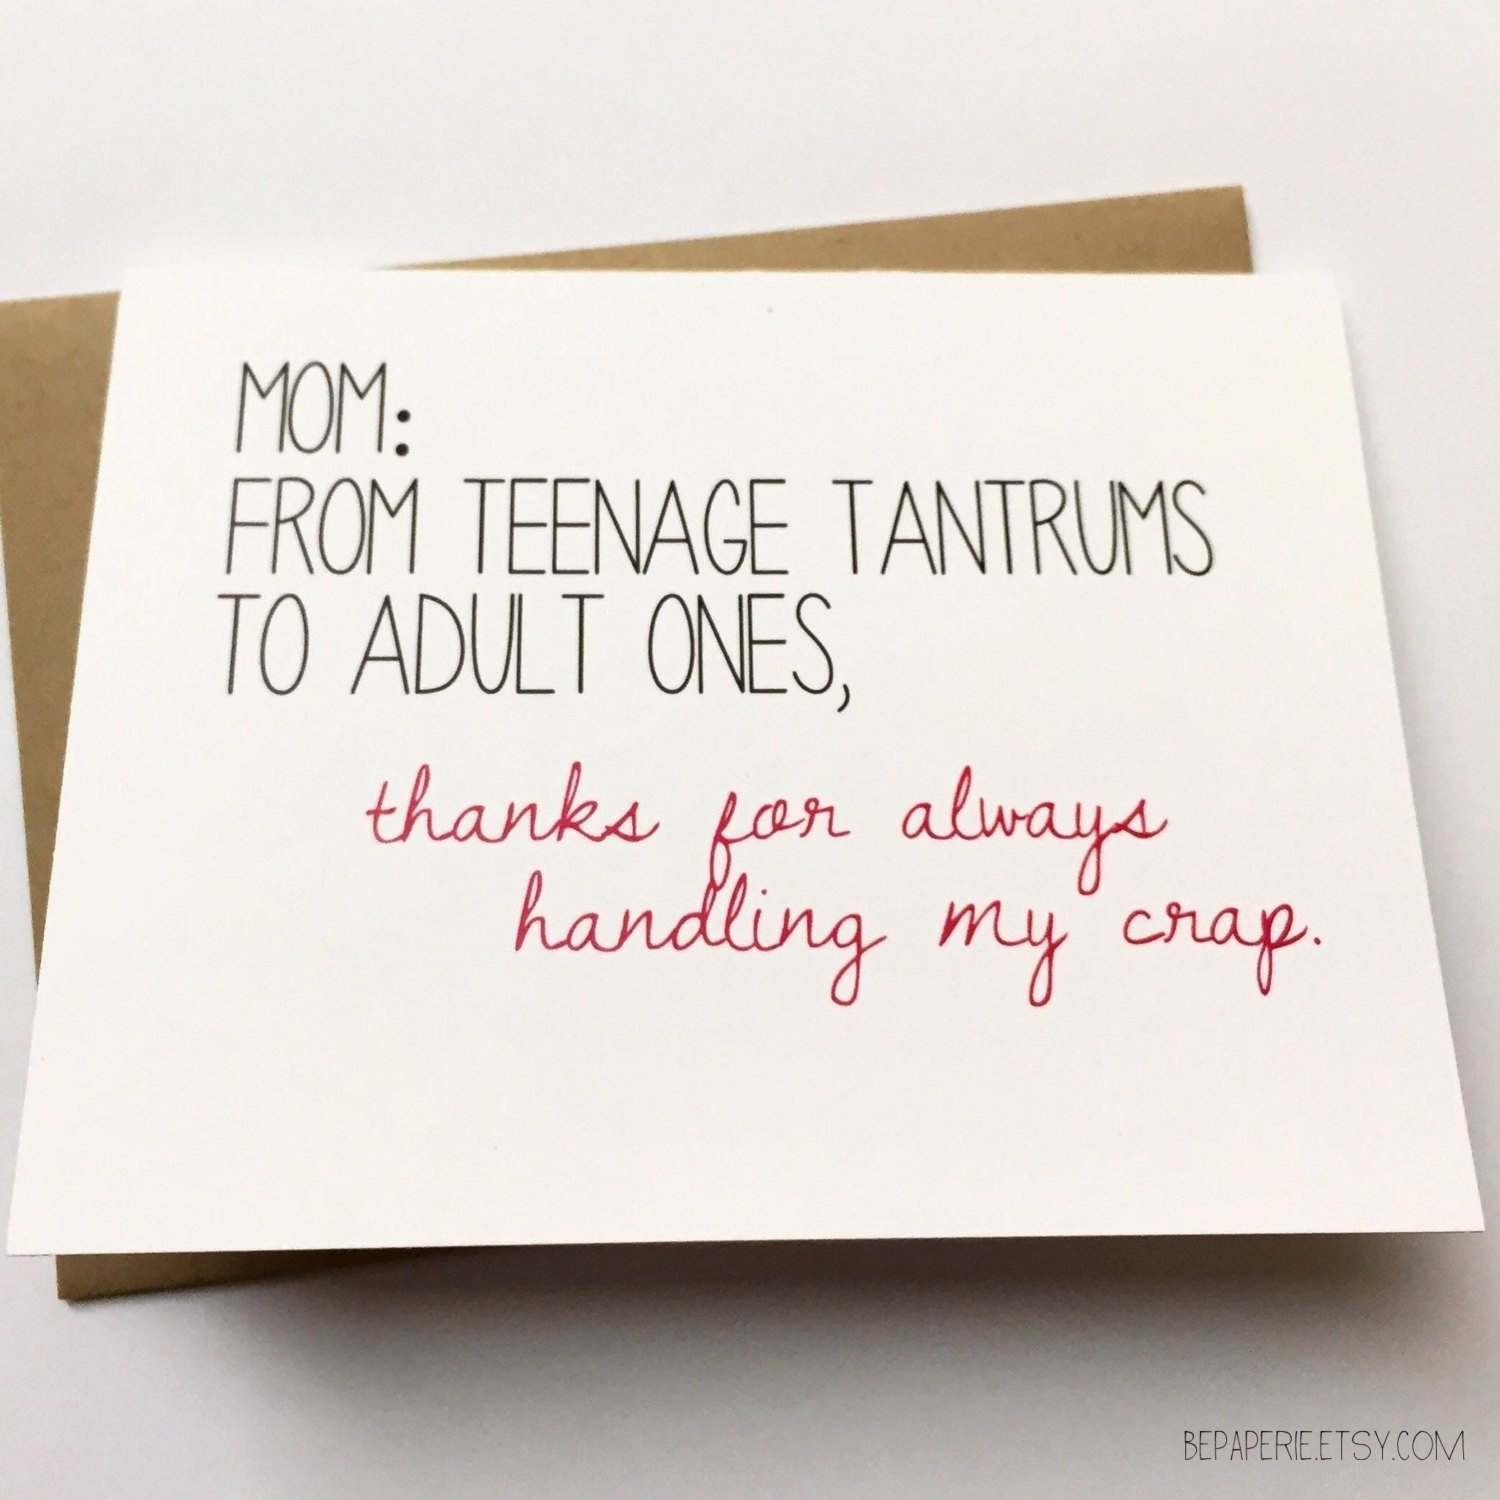 Cute Birthday Card Ideas For Mom 100 Cute Birthday Card Ideas For Mom Birthday Card Ideas For